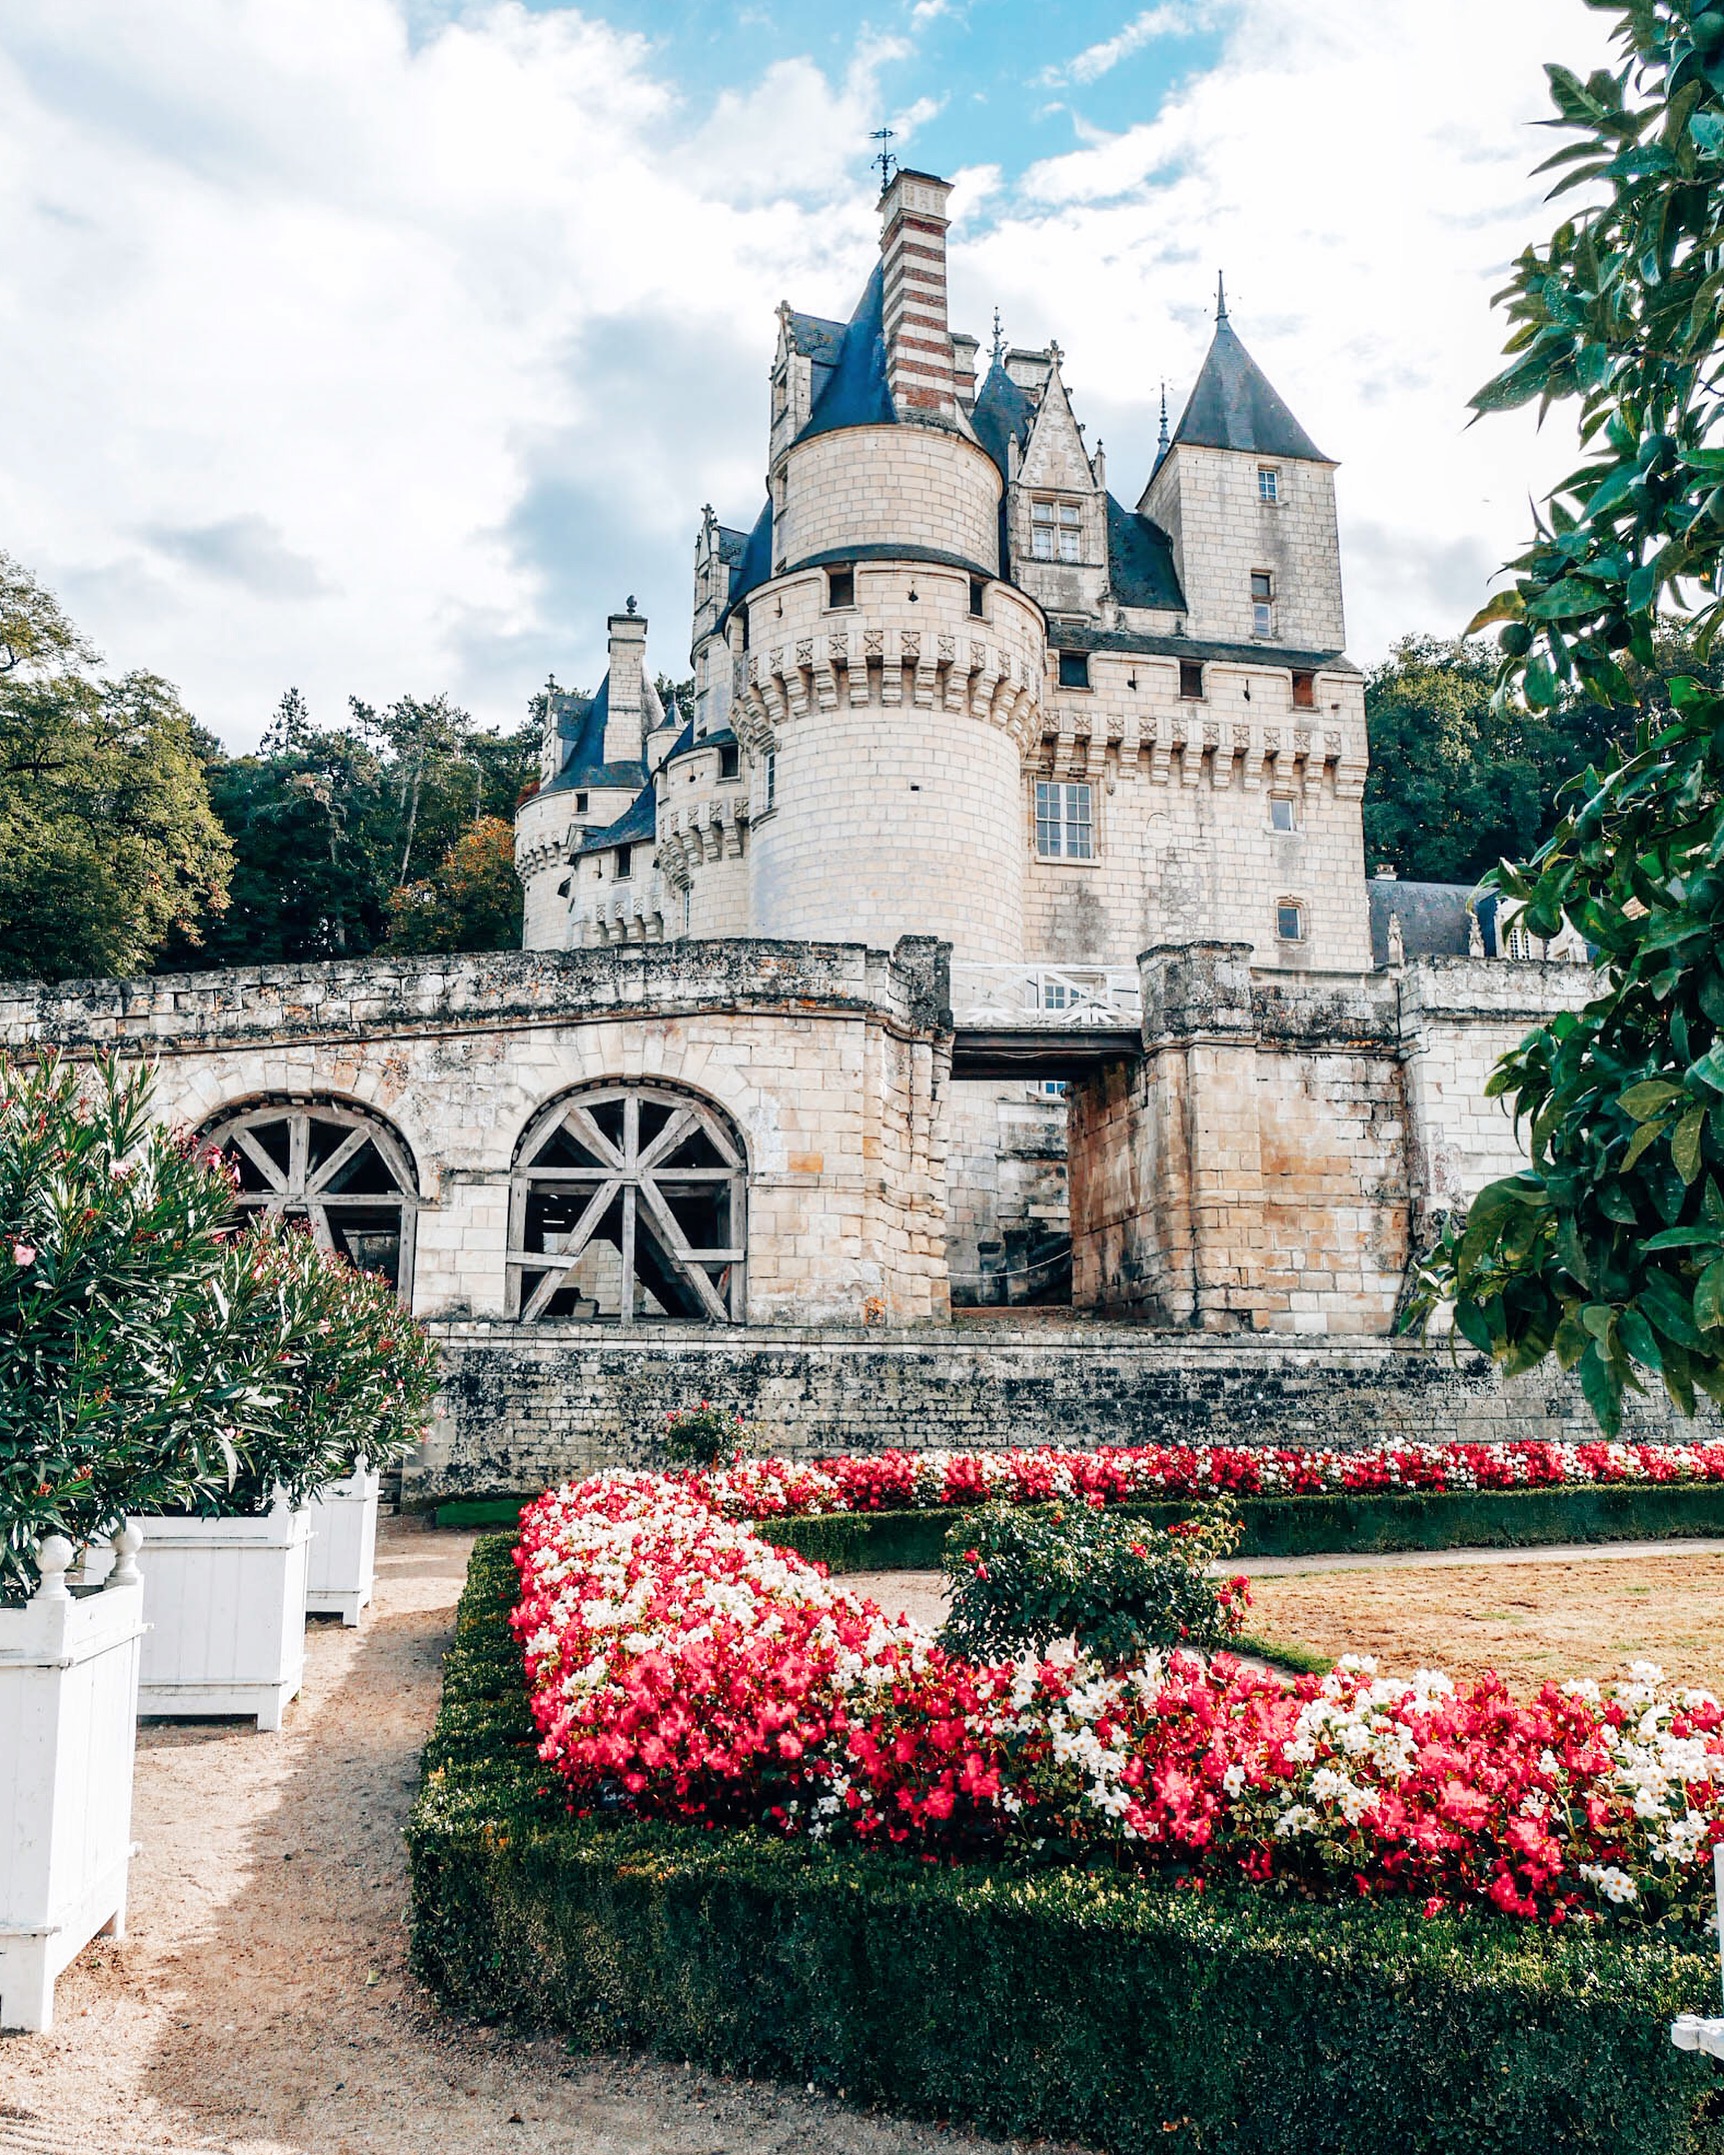 The Castle - Chateau d'Azay-le-Rideau - Loire Valley - France